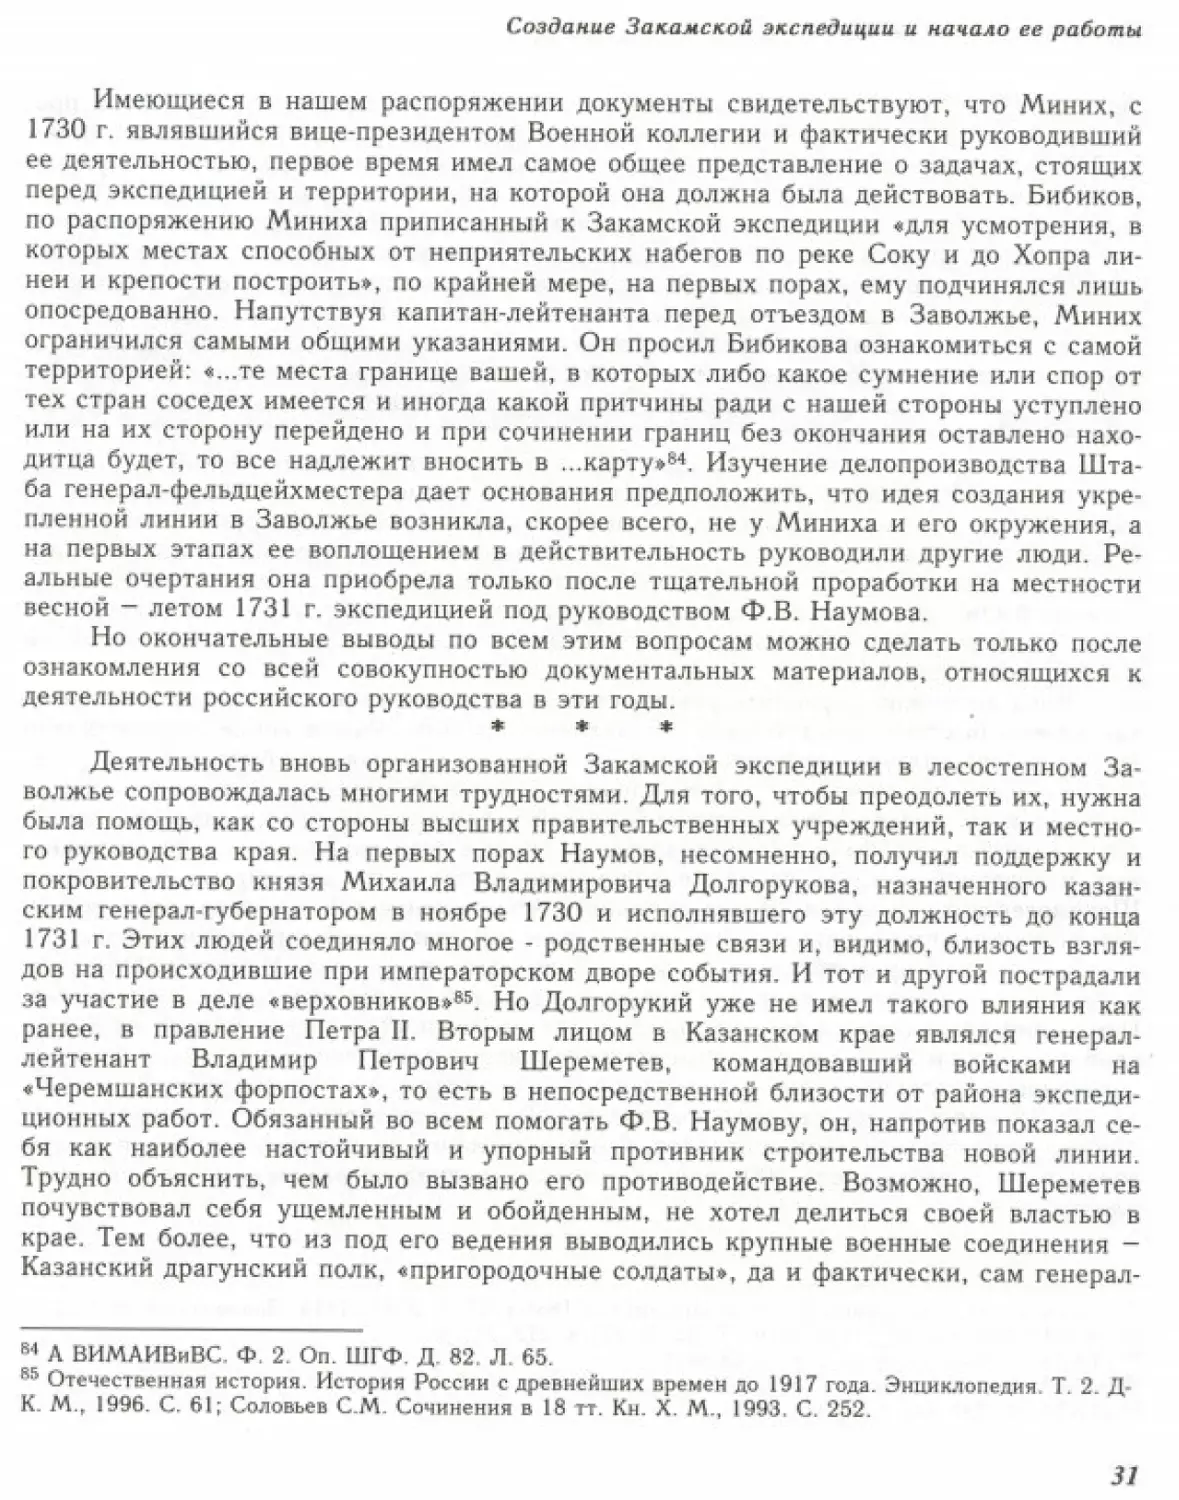 Вал0033.pdf (p.32)